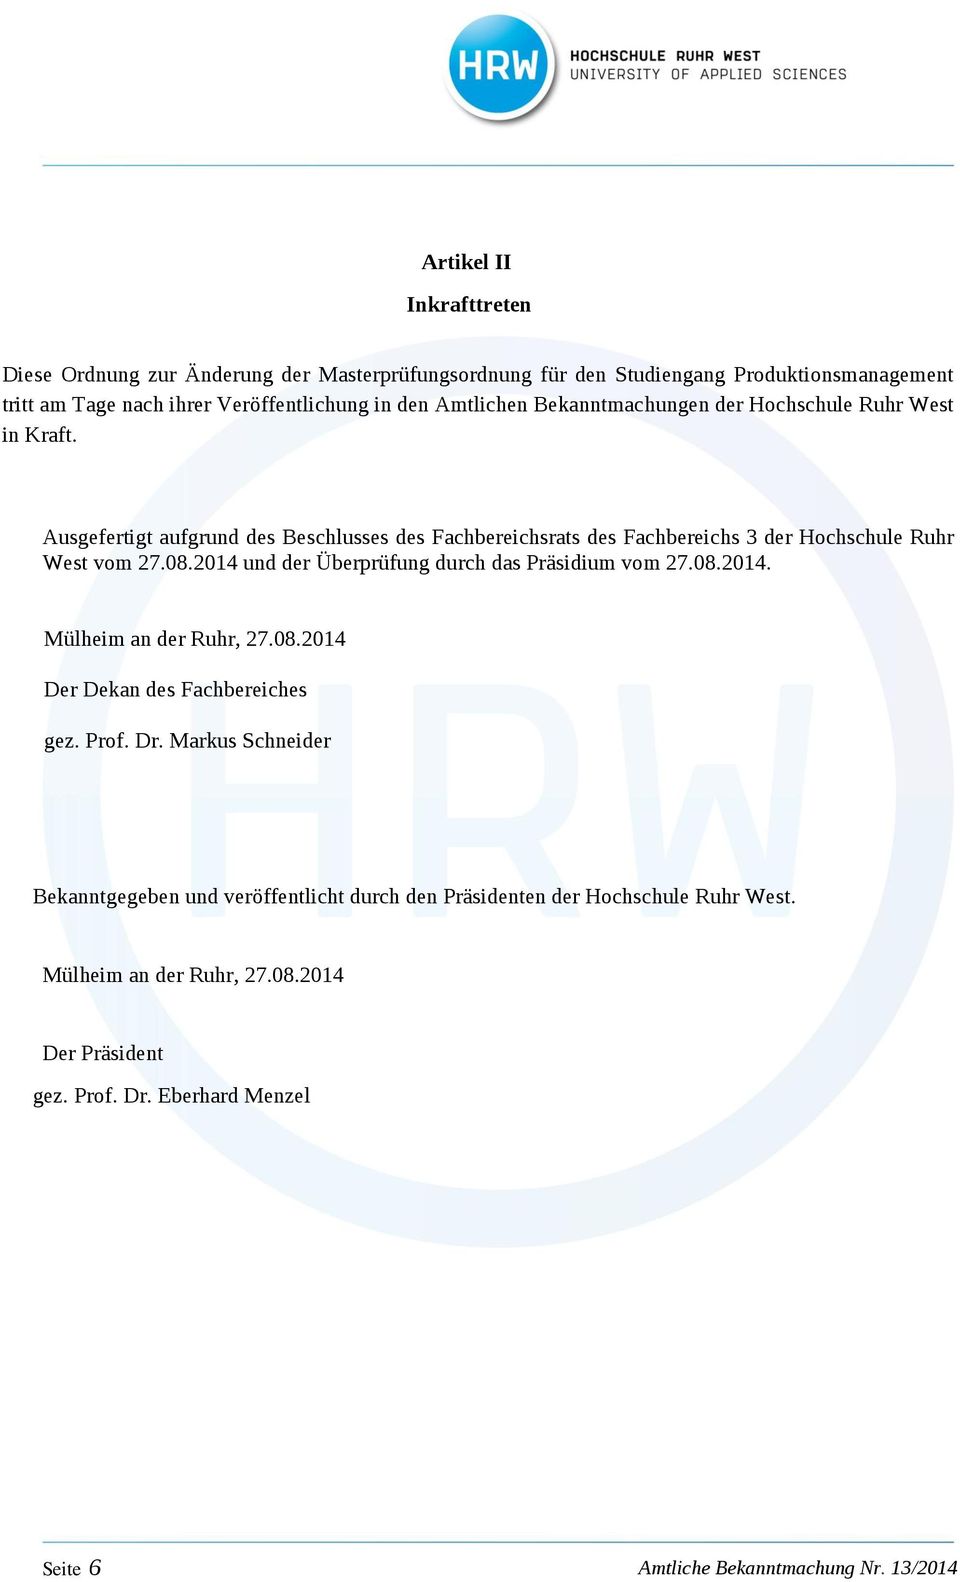 Ausgefertigt aufgrund des Beschlusses des Fachbereichsrats des Fachbereichs 3 der Hochschule Ruhr West vom 27.08.2014 und der Überprüfung durch das Präsidium vom 27.